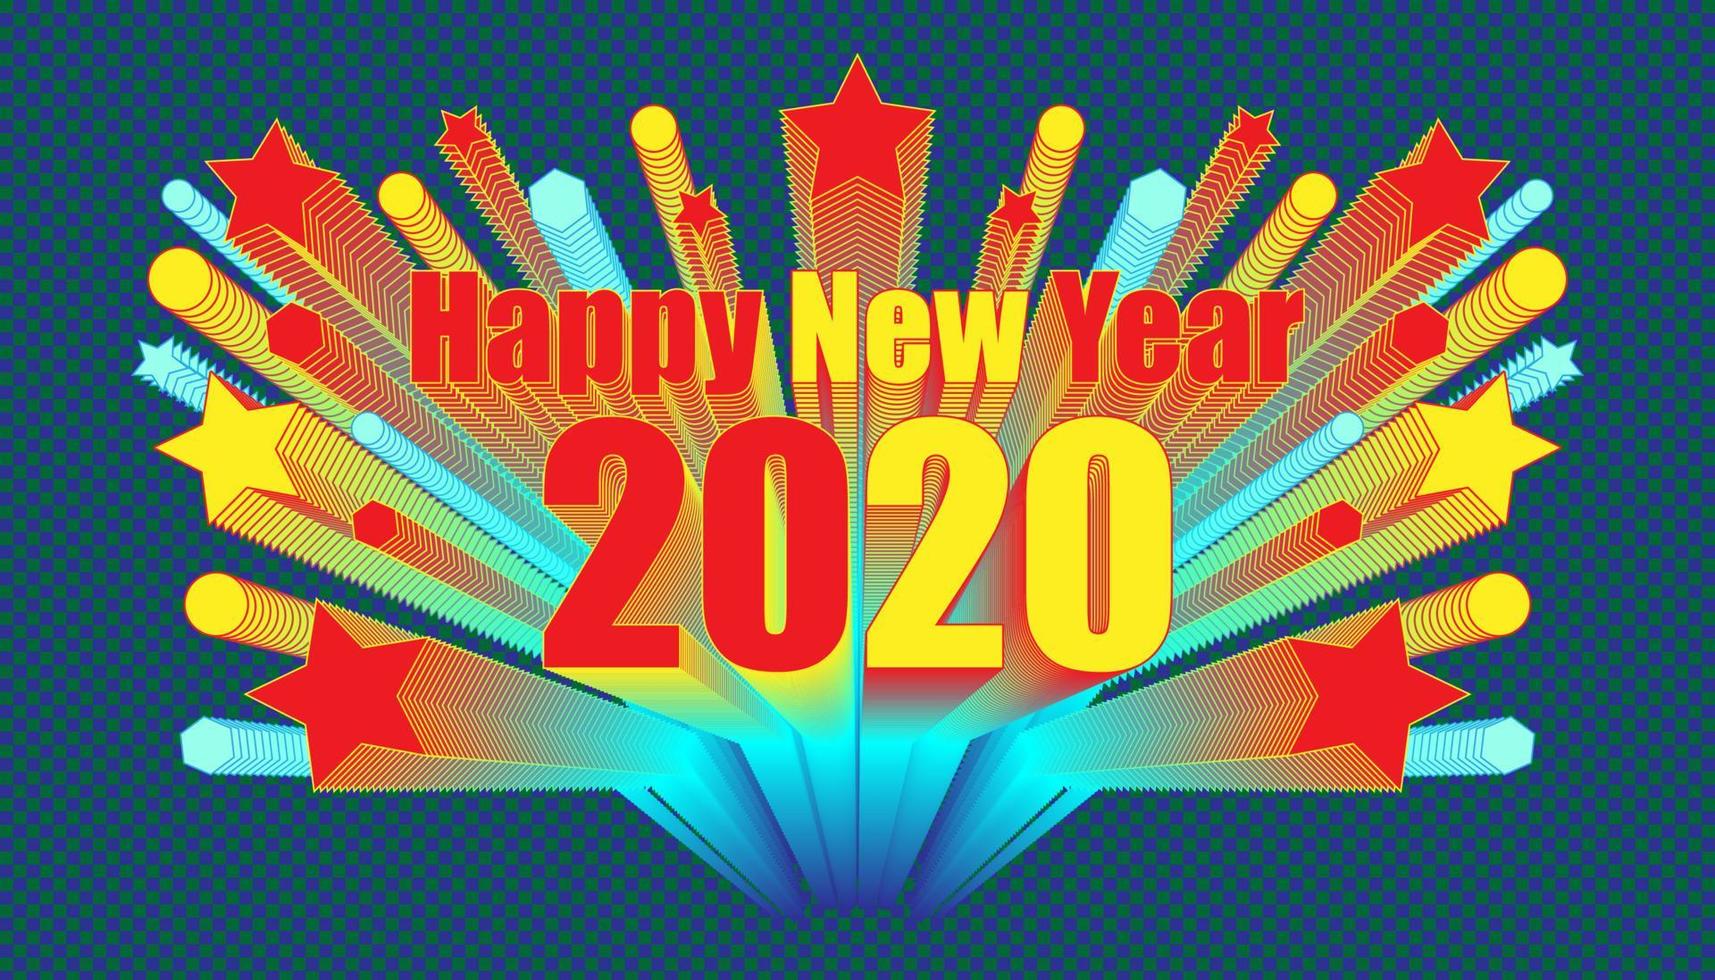 feliz año nuevo 2020 personaje alrededor con objeto de polígono de círculo estelar mezcla estilo retro. estilo de fondo de color azul oscuro a cuadros. ilustración vectorial eps10 vector